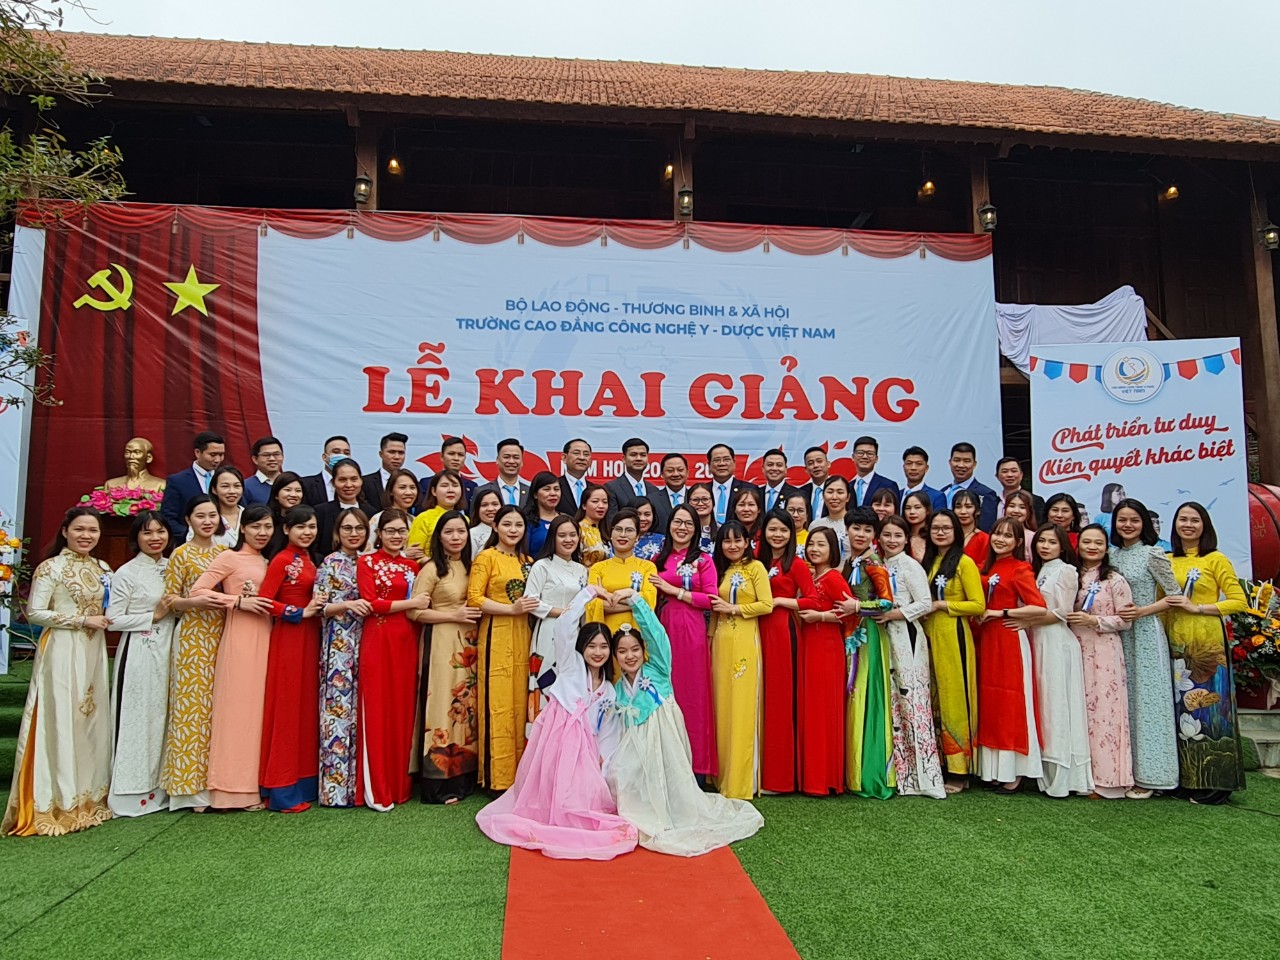 Trường Cao đẳng Công nghệ Y - Dược Việt Nam: Linh hoạt giảng dạy, đào tạo trong mùa dịch COVID-19